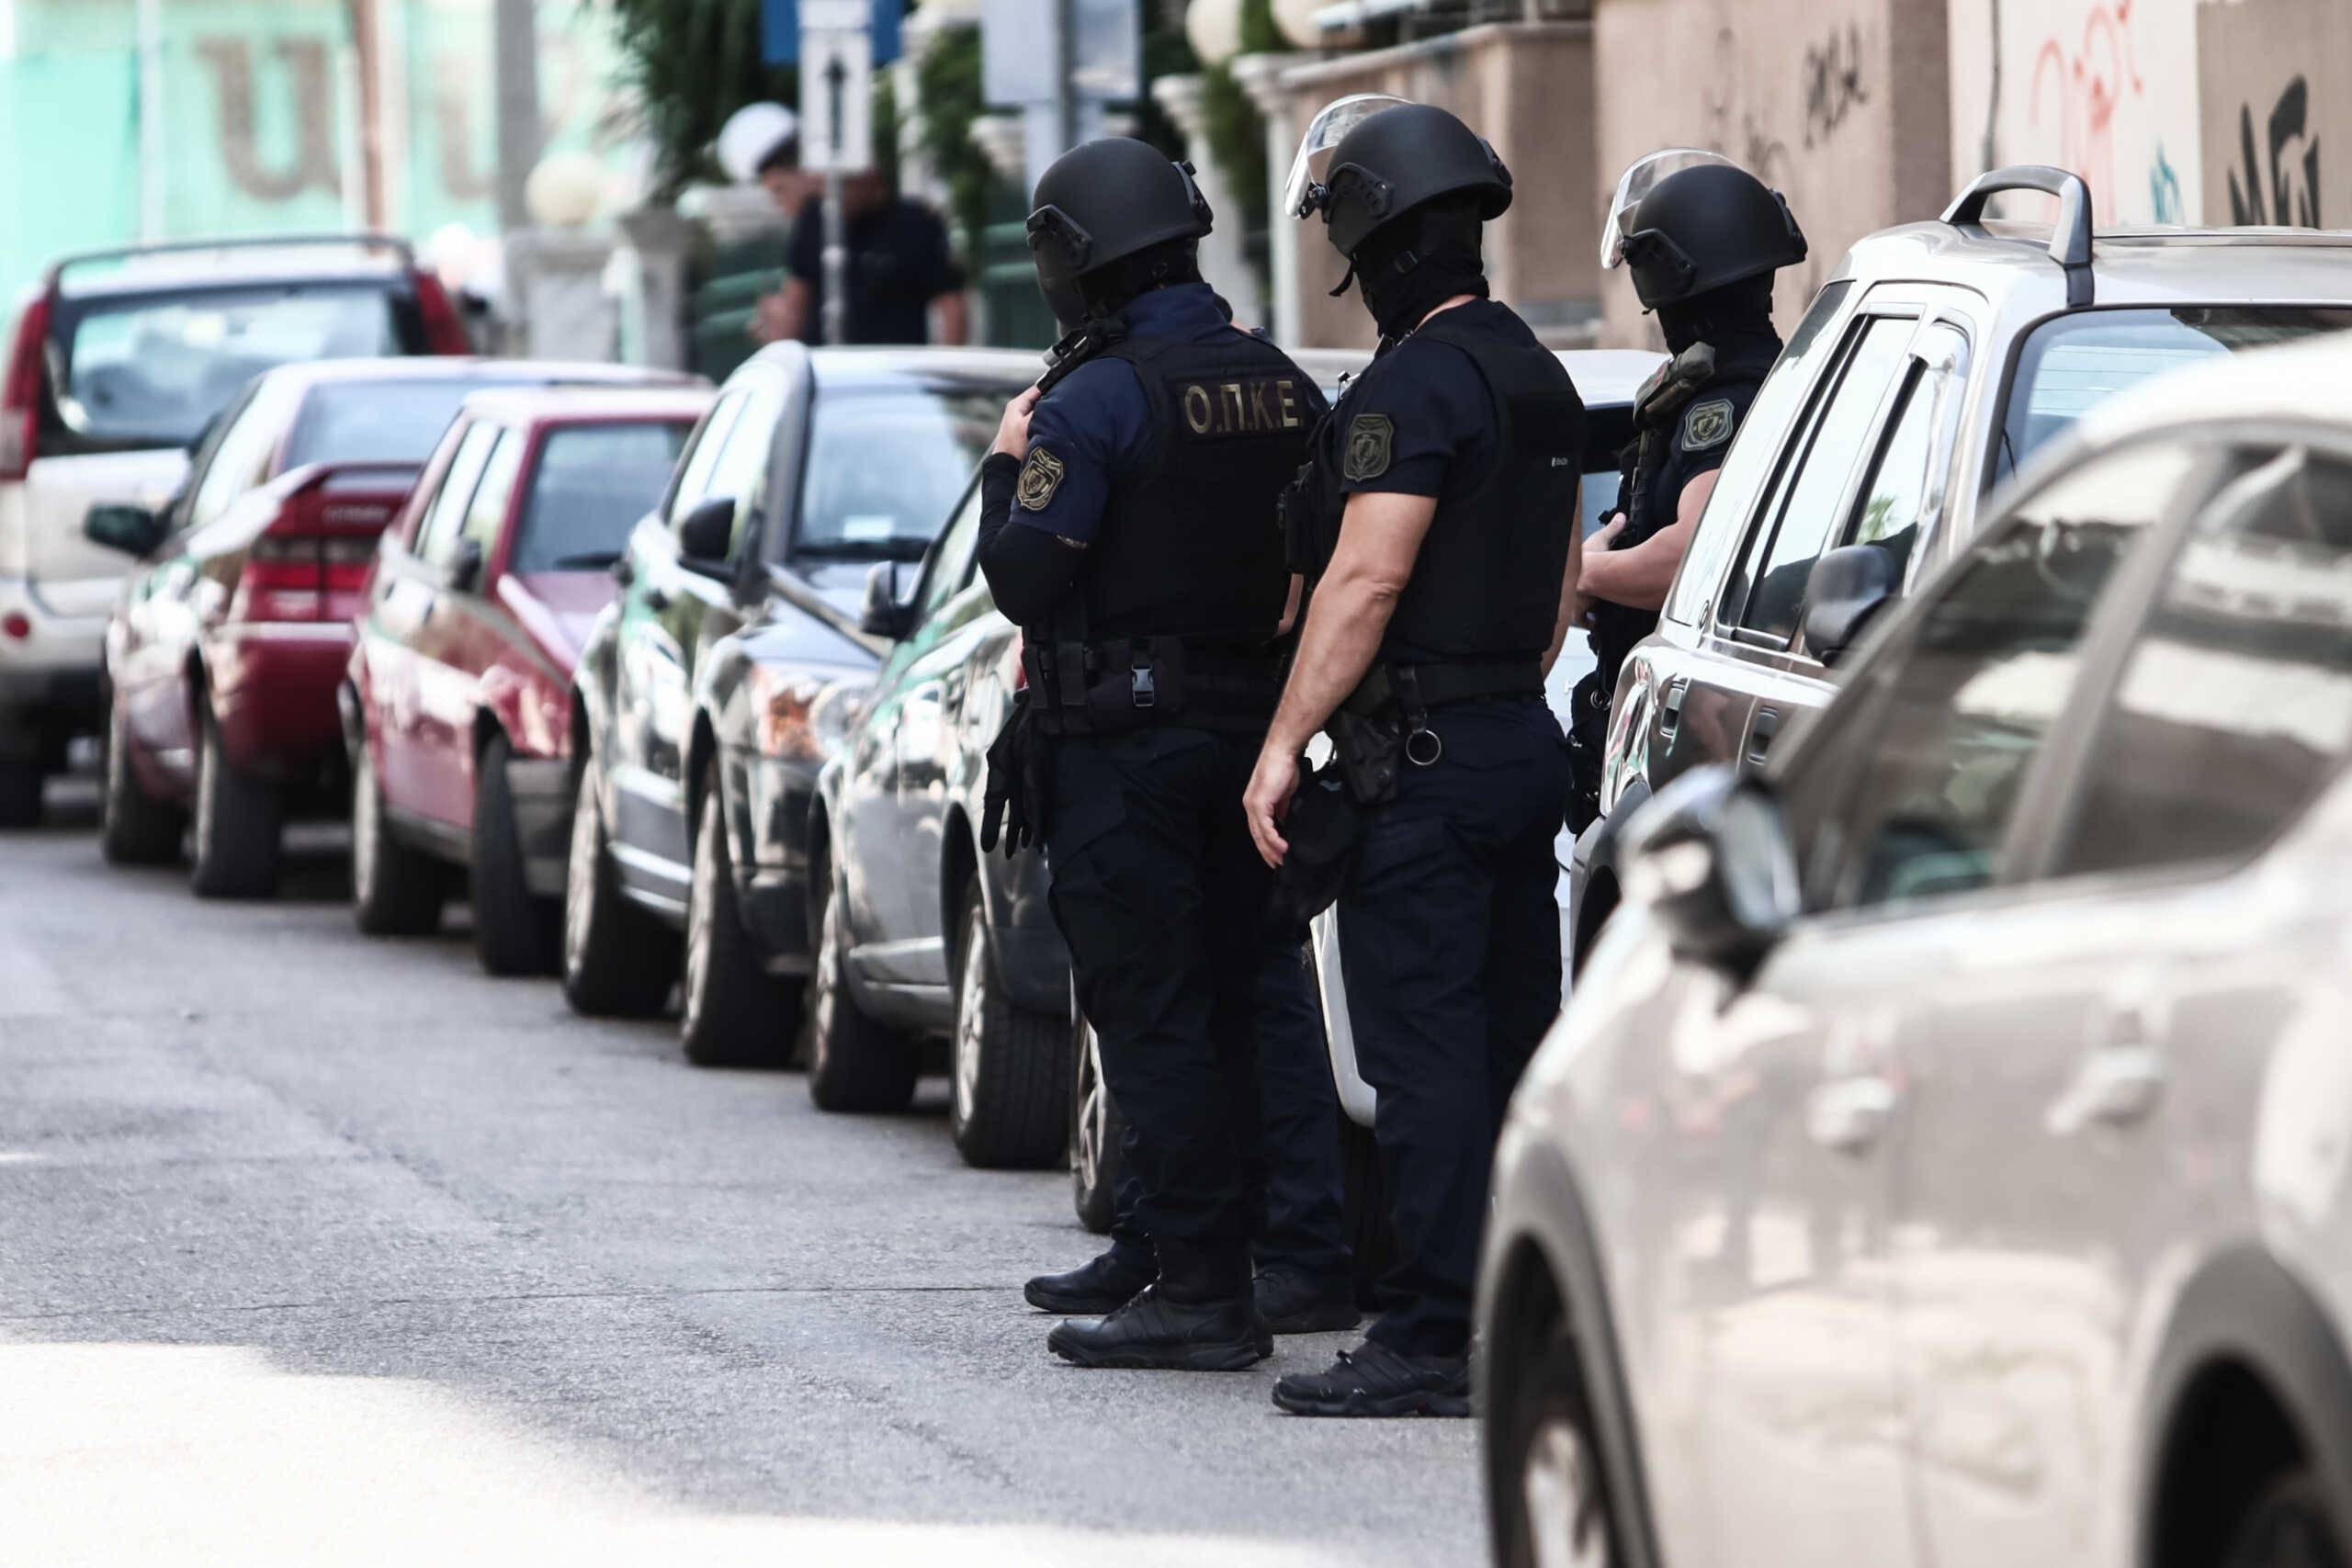 Ρουβίκωνας: Συνελήφθησαν 4 μέλη για επίθεση σε μαγαζί στη Νέα Ιωνία – Ανάμεσά τους και ηγετικό στέλεχος